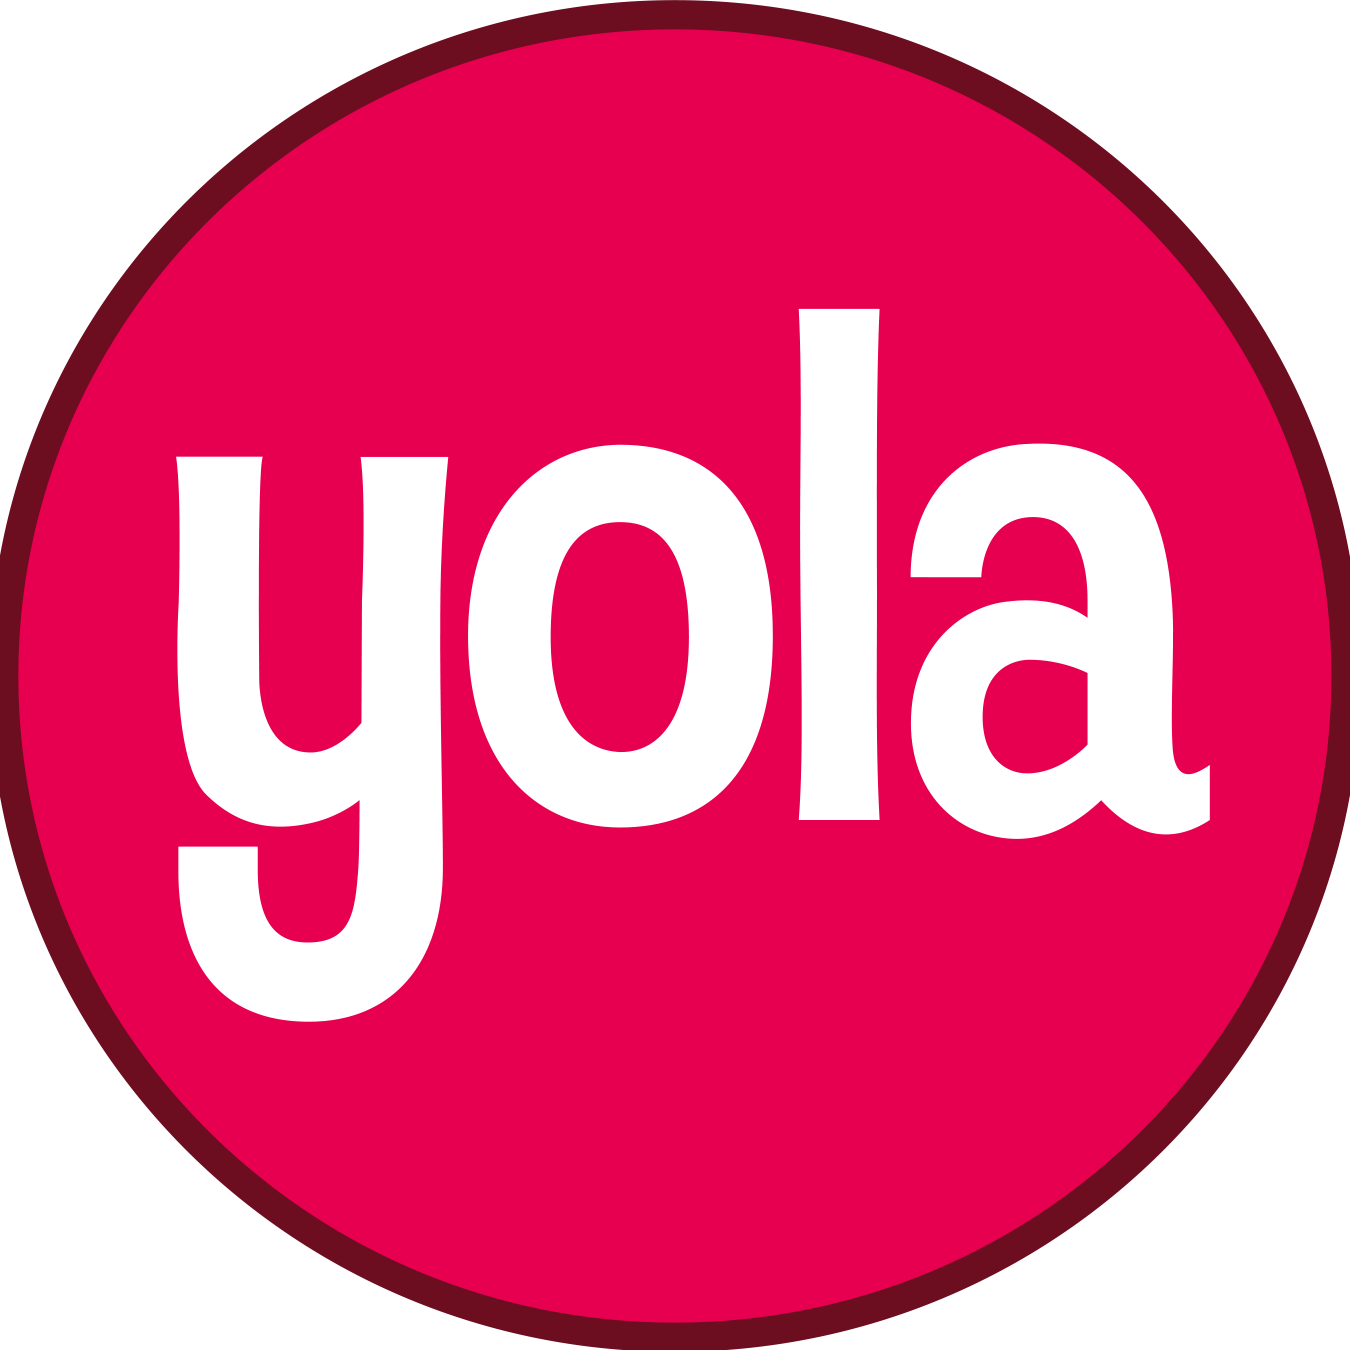 Yola - один из немногих провайдеров CMS, который предлагает телефонную линию поддержки